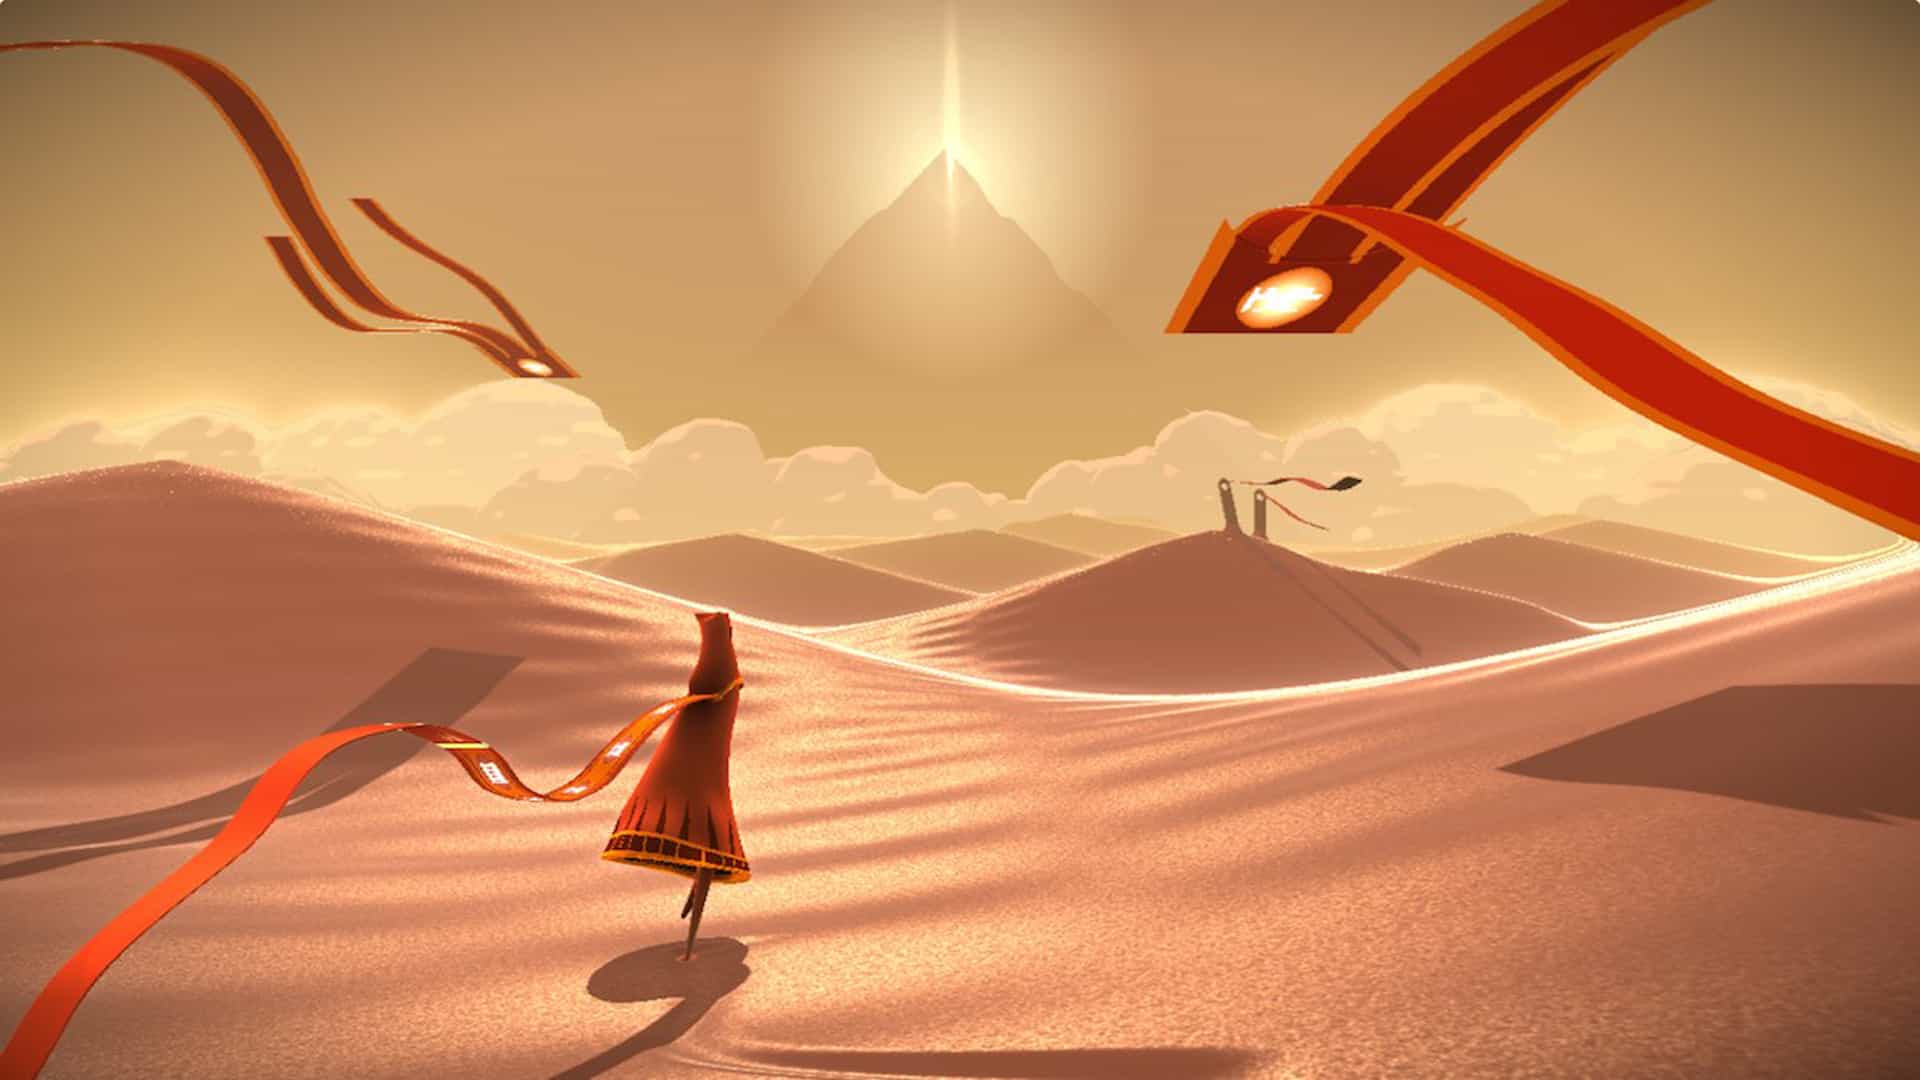 Journeys сайт. Journey игра thatgamecompany. Journey (игра, 2012). Джорни путешествие игра. Пустыня из игры Джорни.